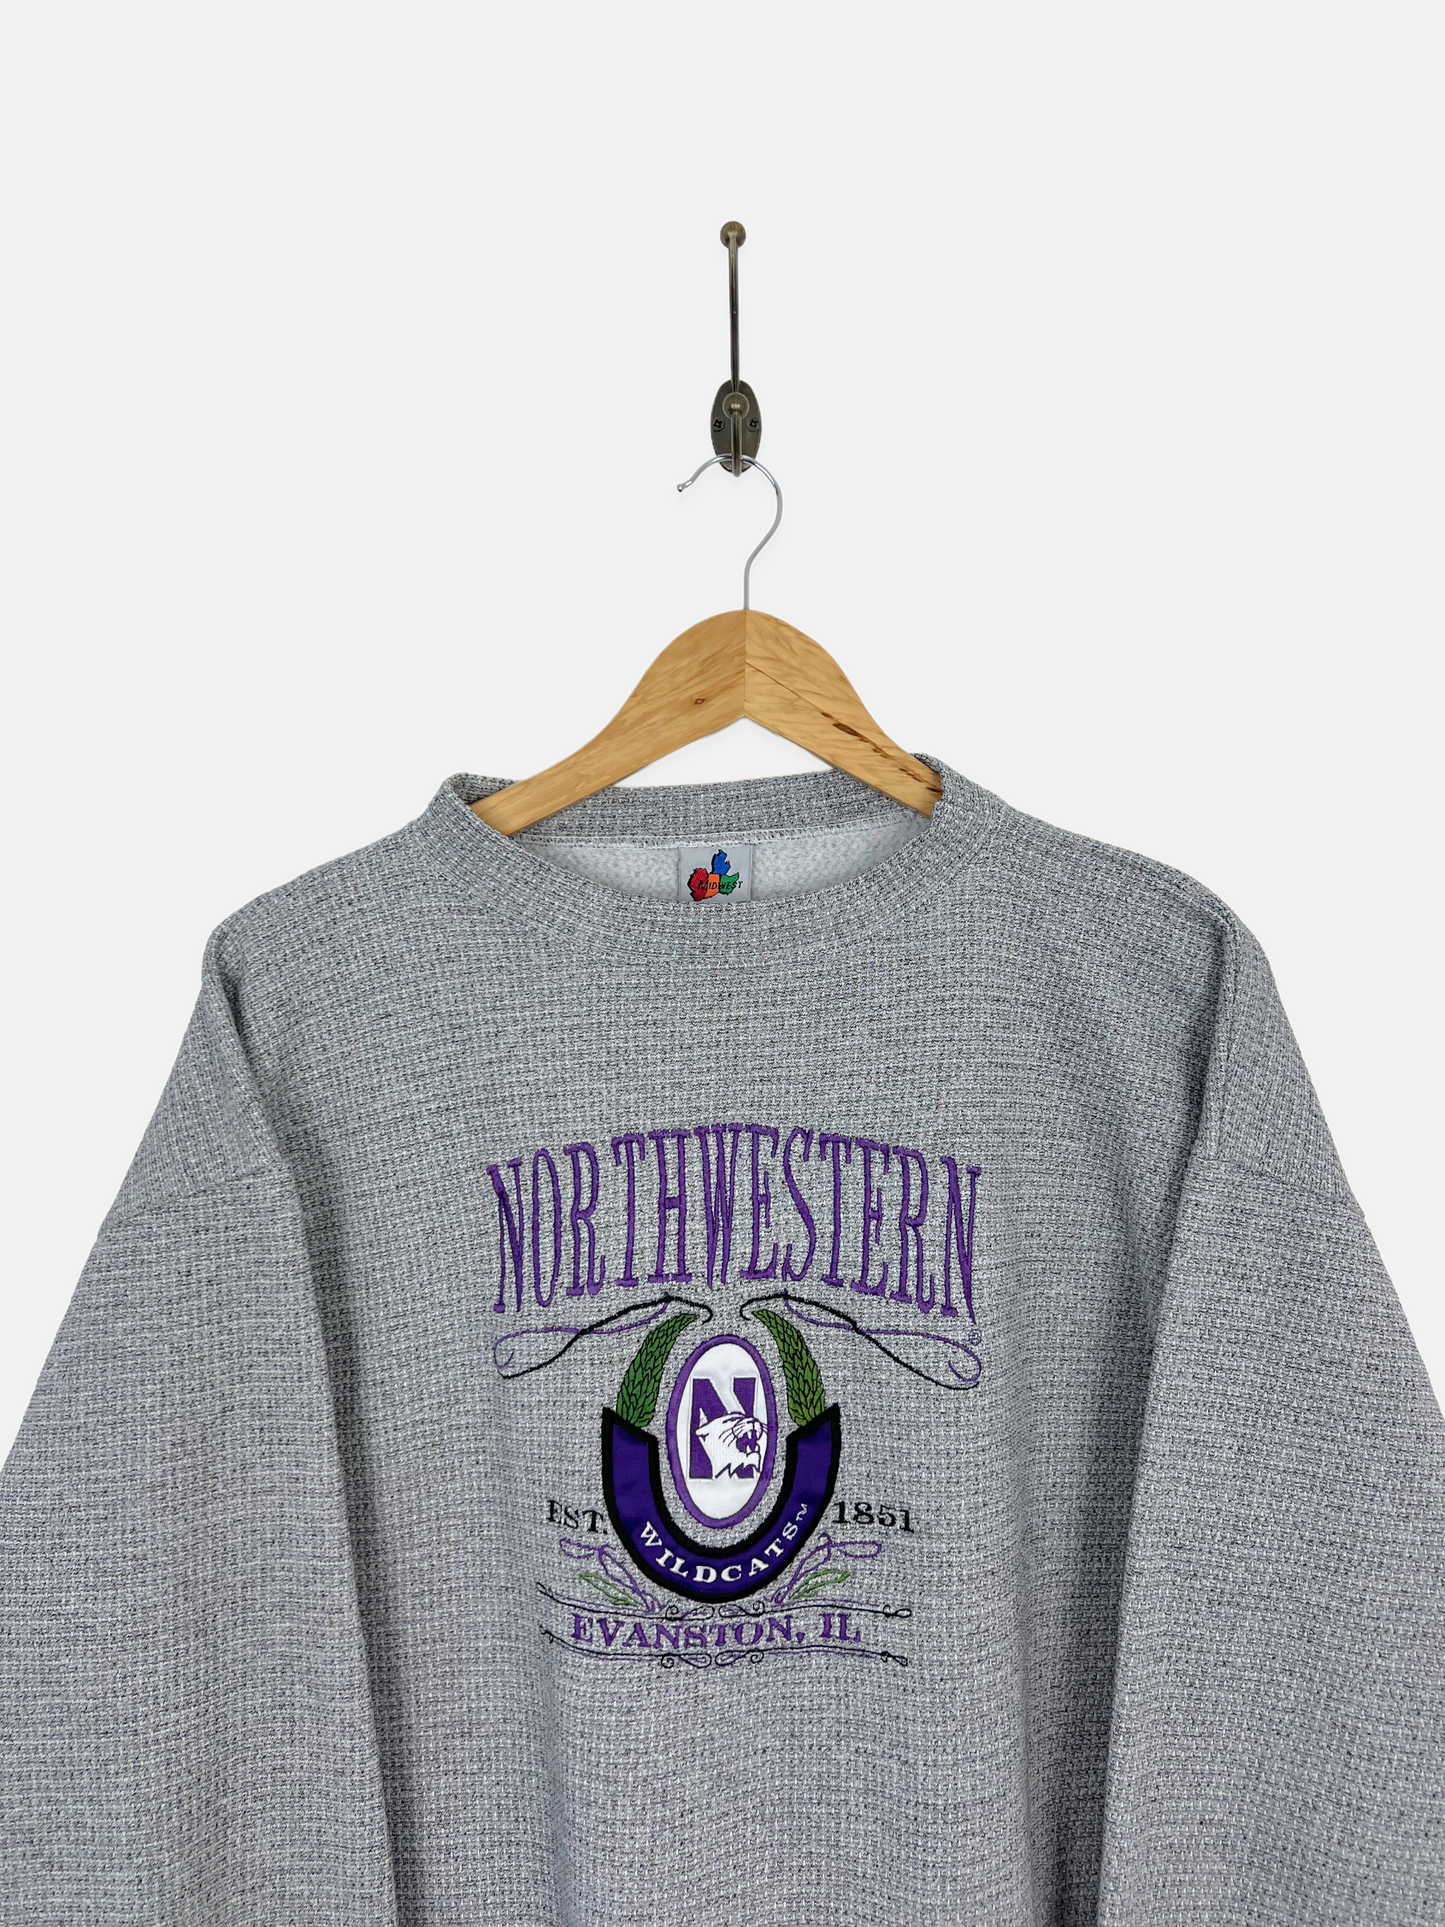 90's Northwestern Wildcats Embroidered Vintage Sweatshirt Size 12